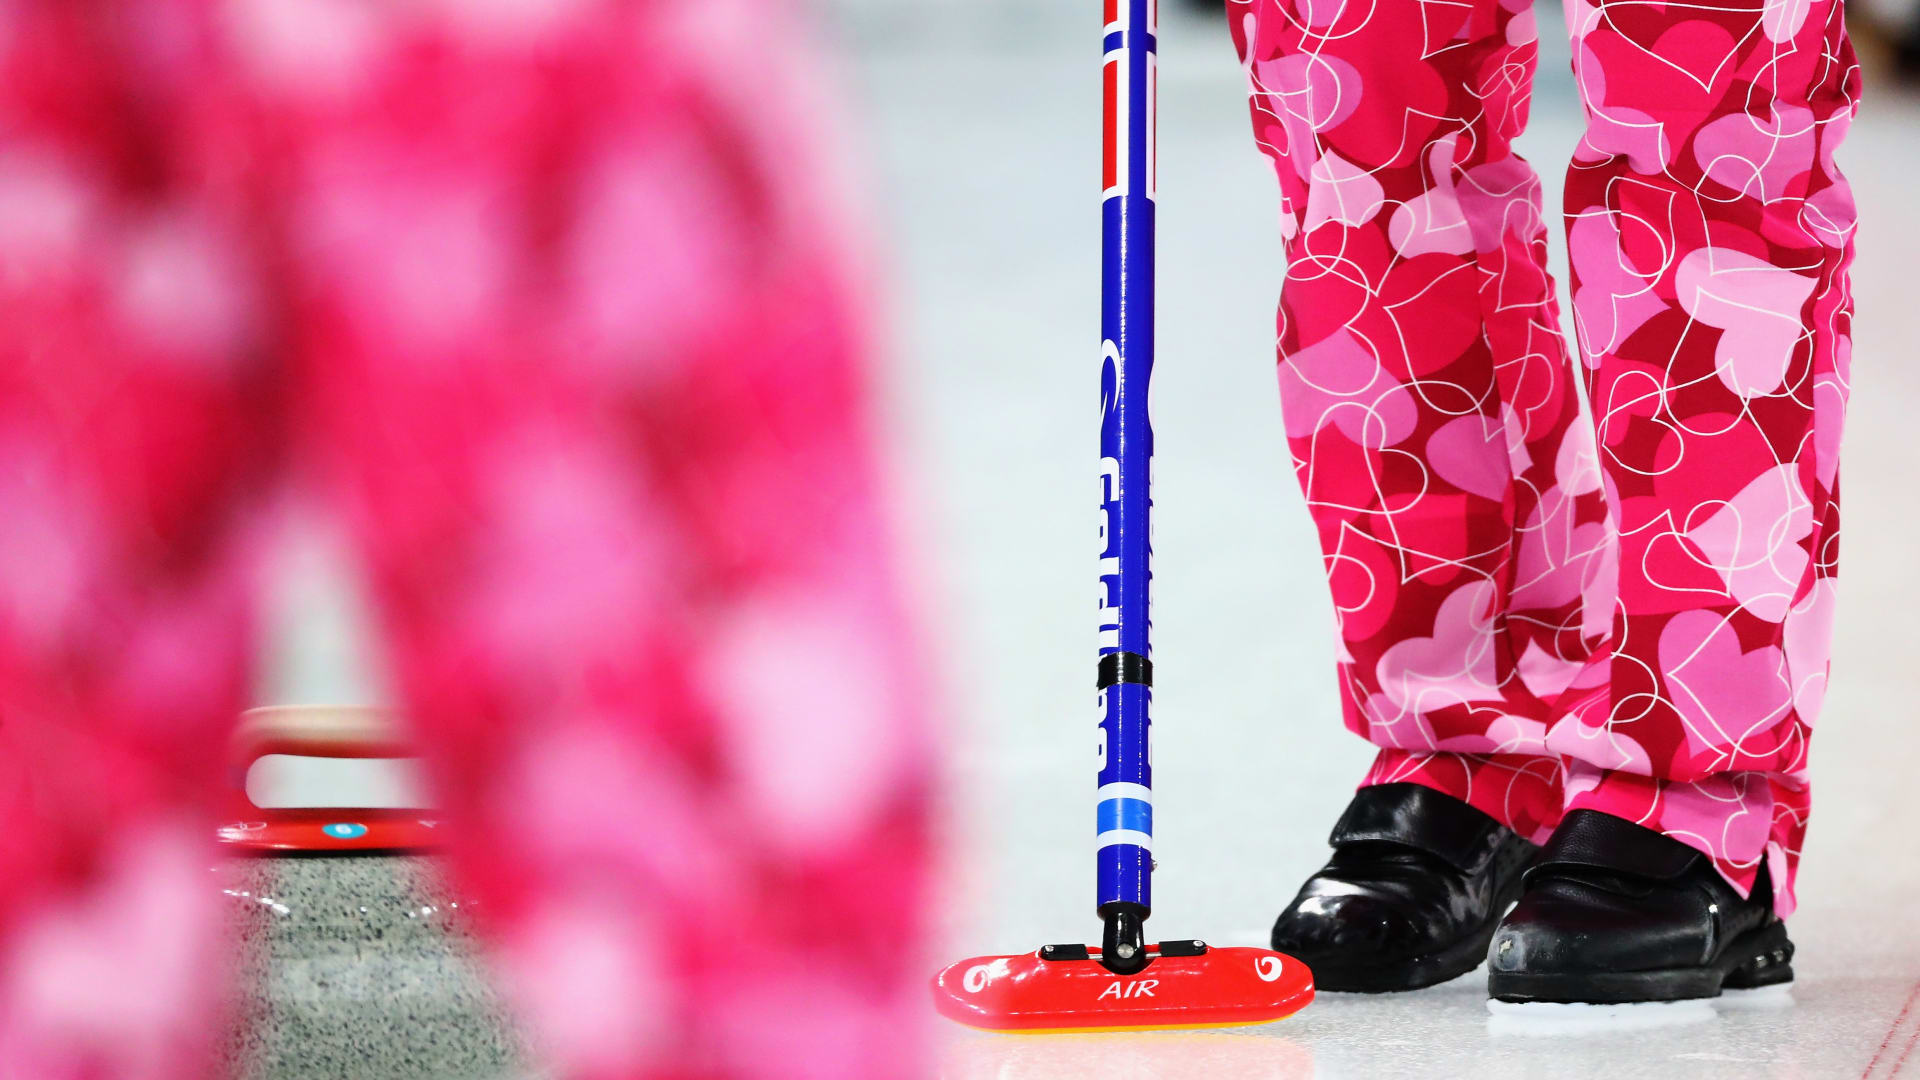 الفريق النرويجي يحتفل بـ"الفالنتاين" على طريقته الخاصة في الأولمبياد الشتوي 